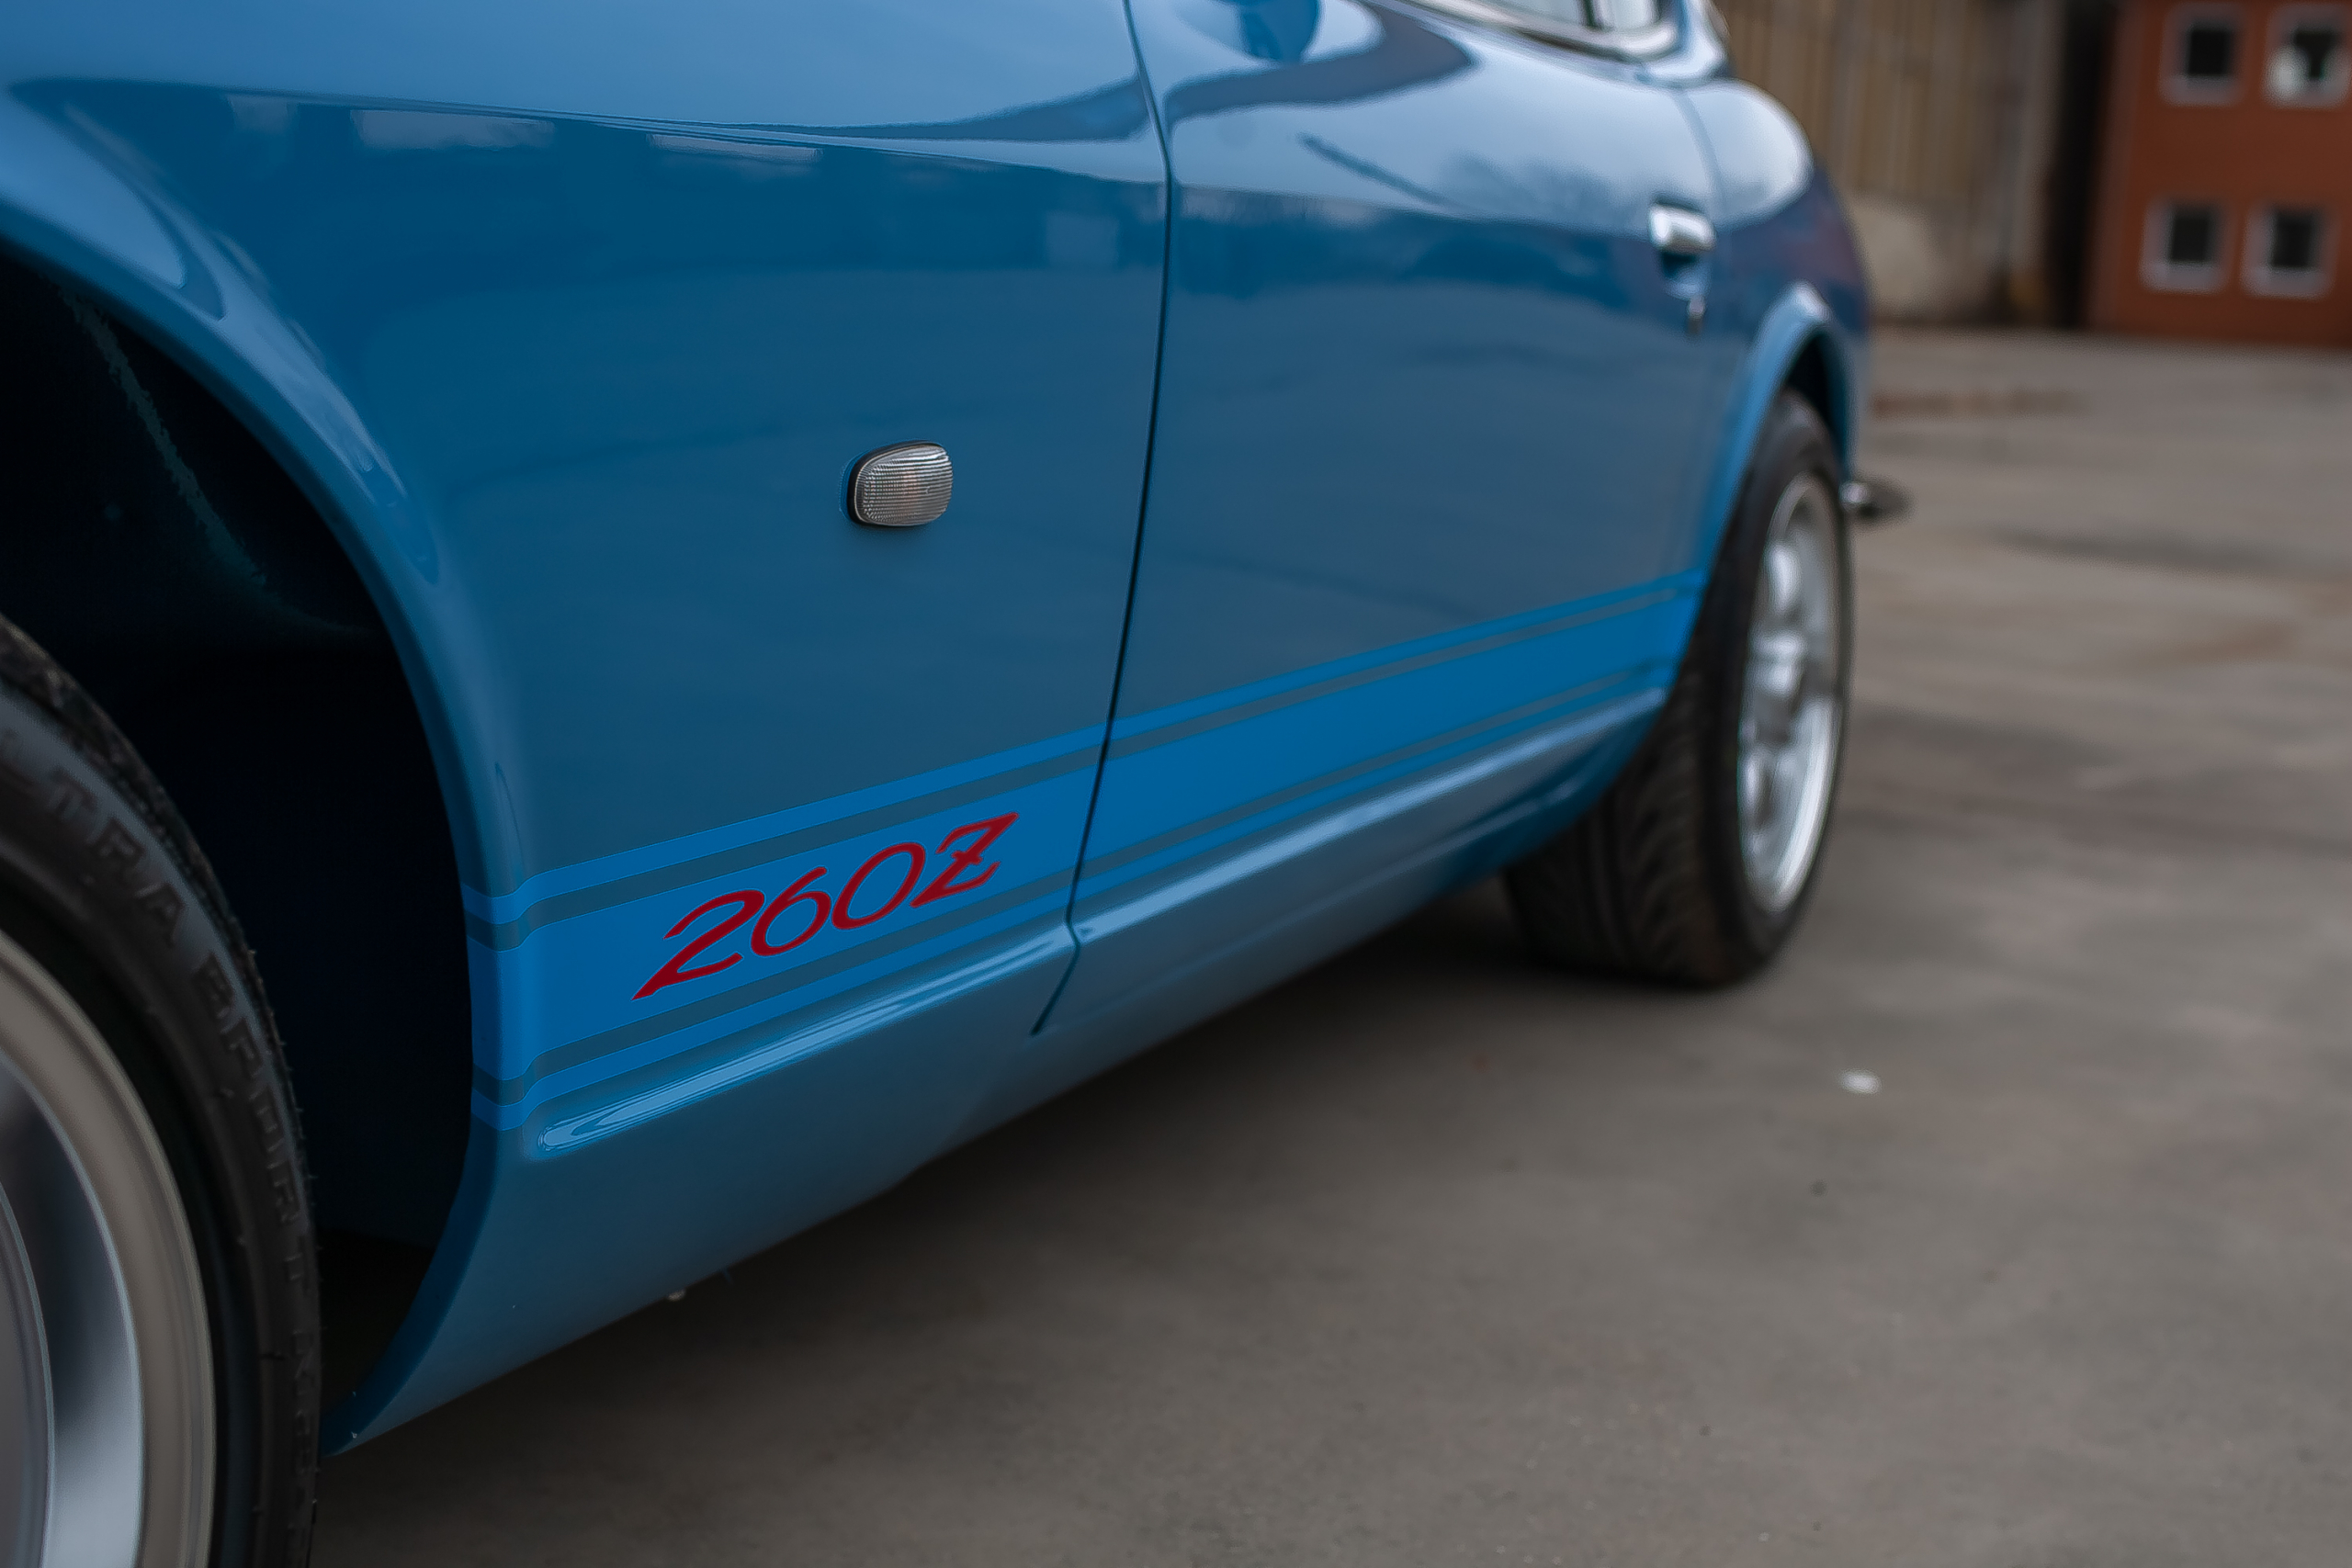 Blauer Datsun 260z zu verkaufen Deutschland komplett restauriert